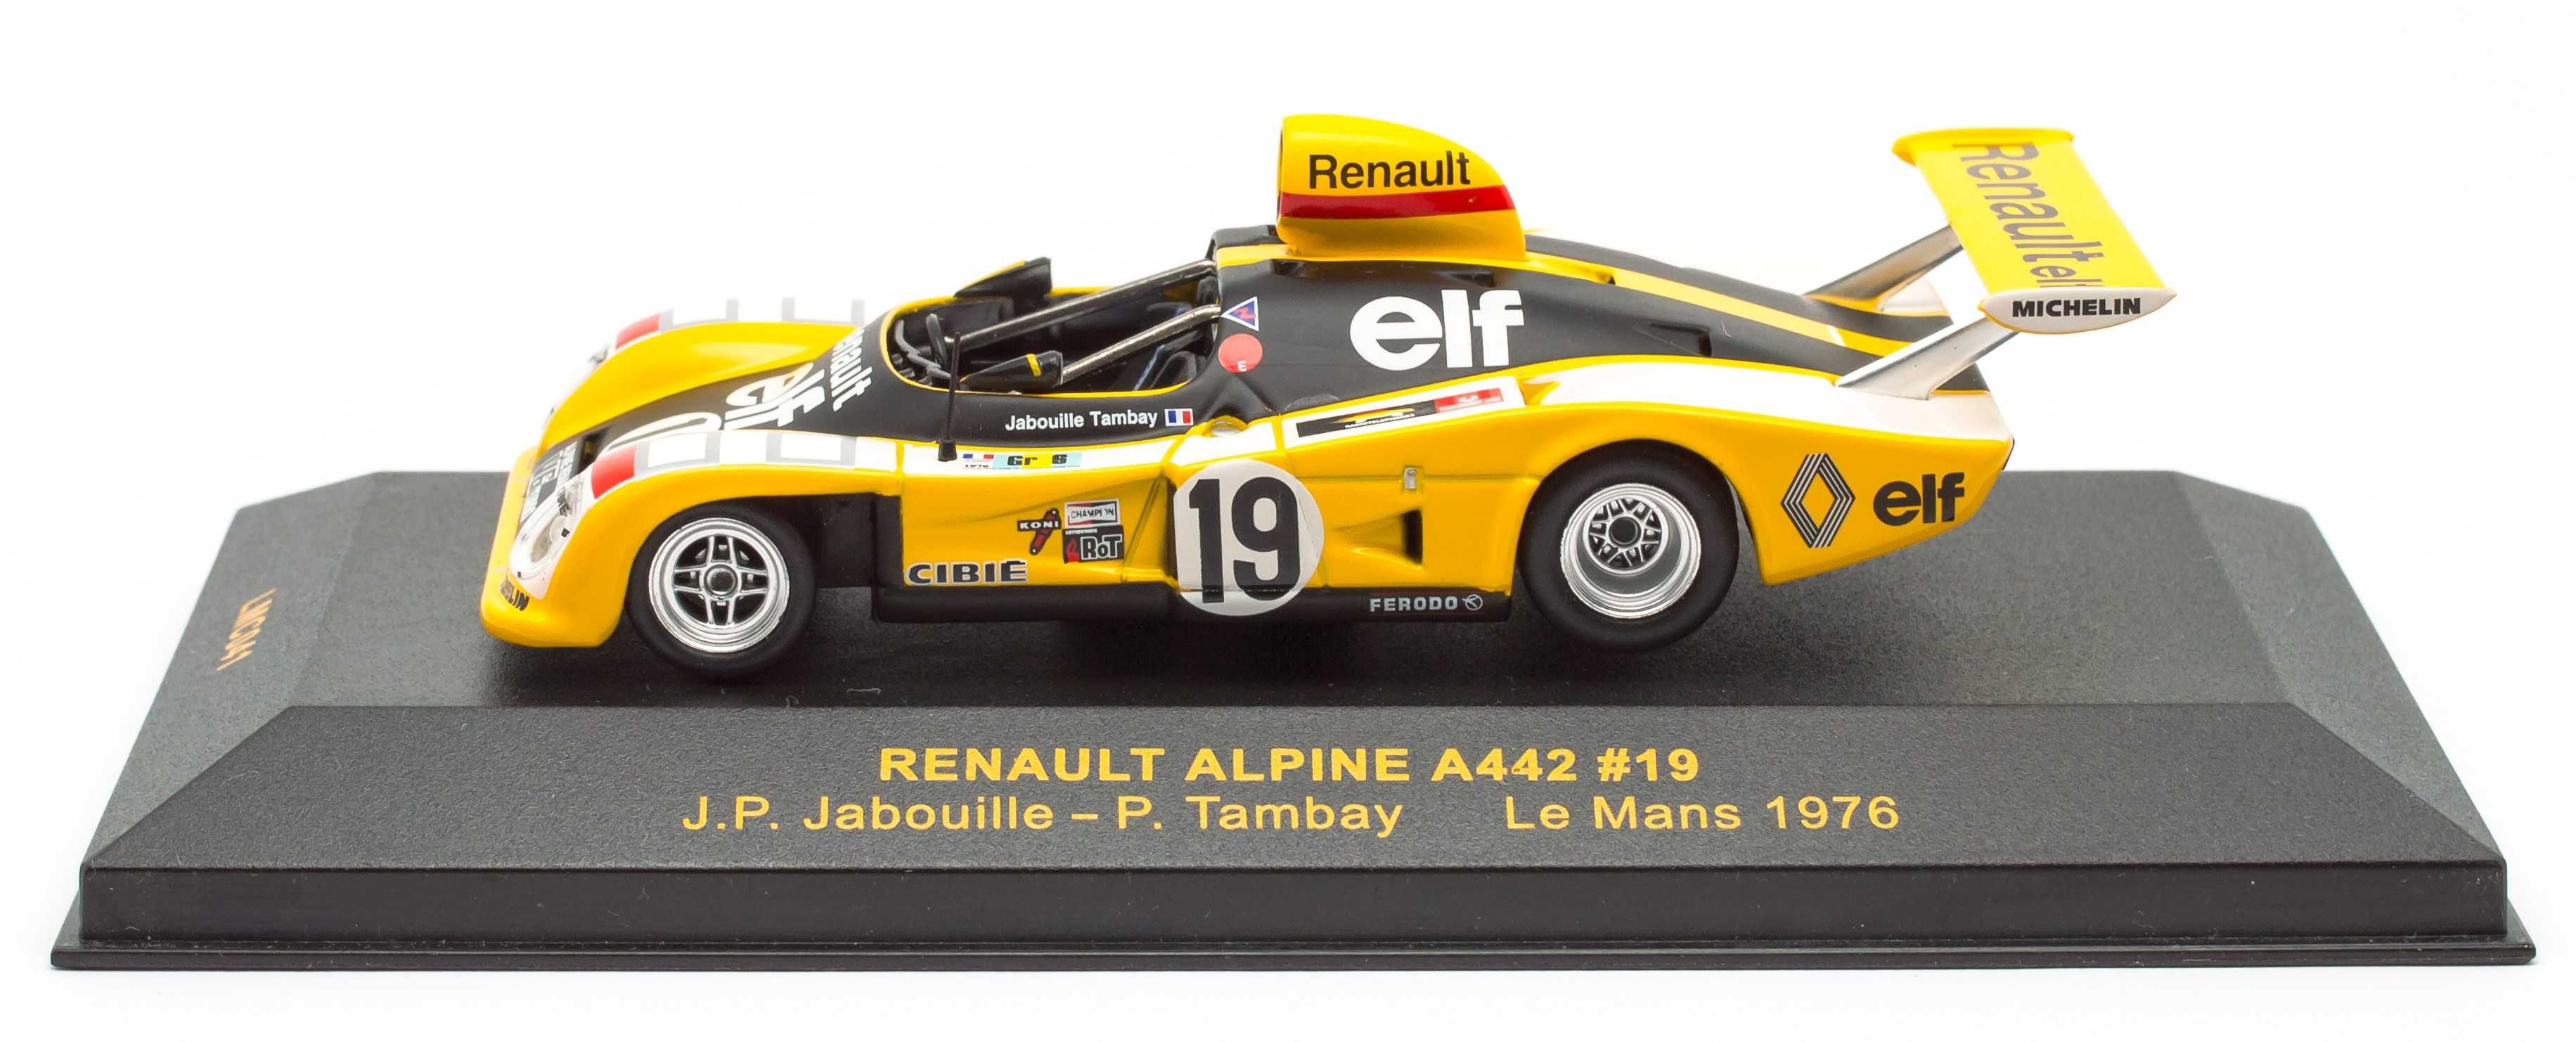 IXO LMC041 Renault Alpine A442 Jabouille Tambay 24h Le Mans 1976 1/43